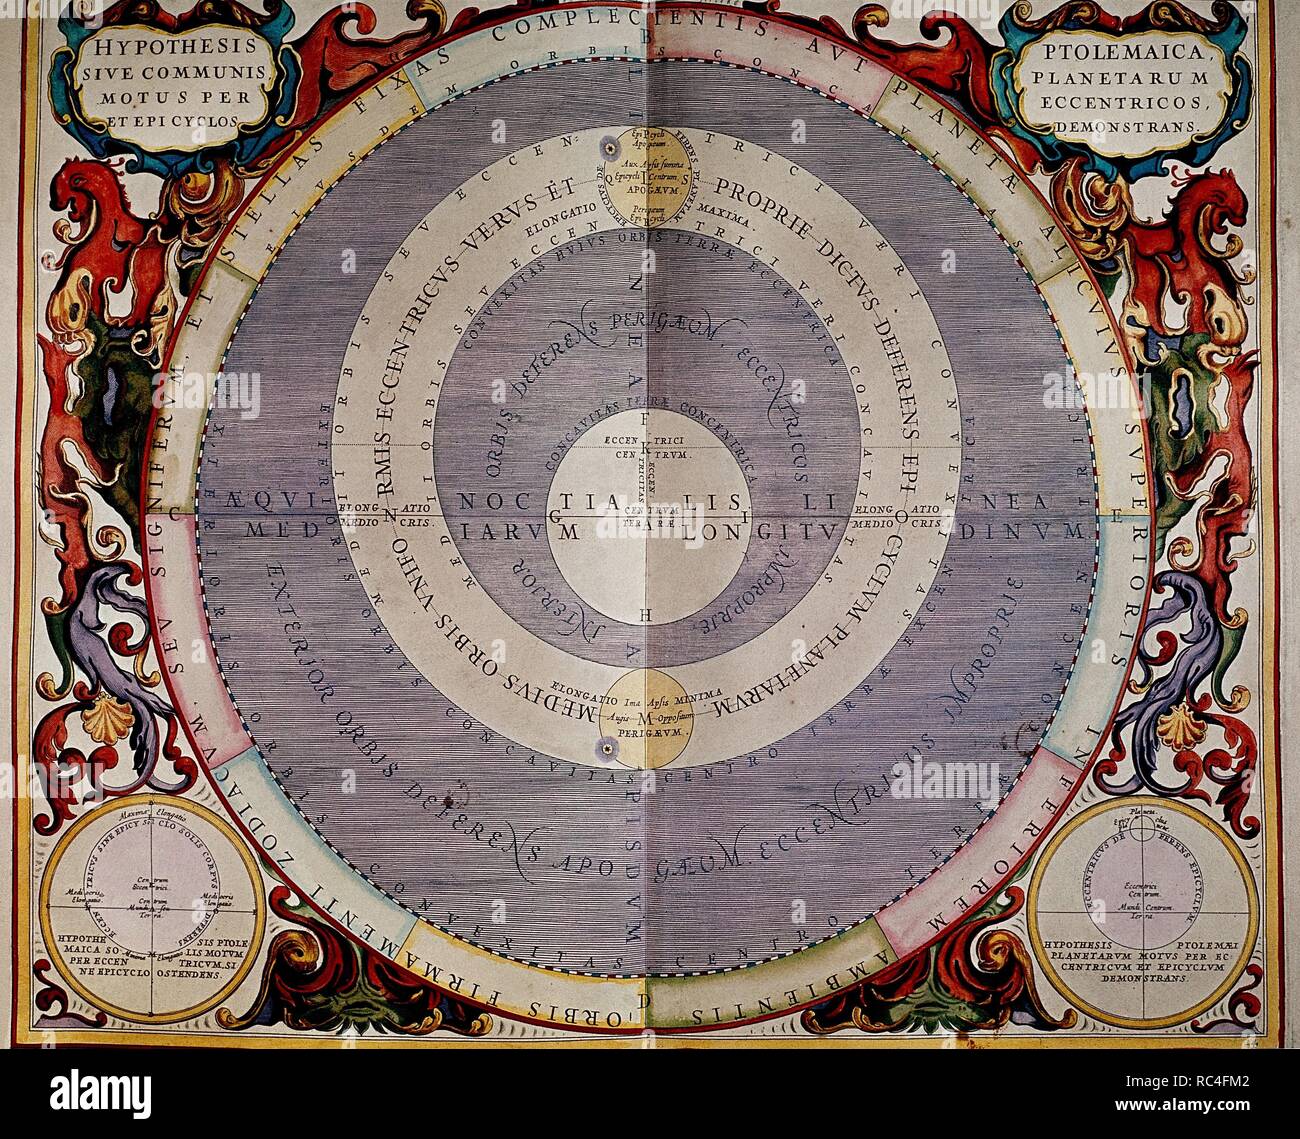 Système ptolémaïque, de 'l'atlas céleste, ou l'harmonie de l'Univers' (Atlas Coelestis seu harmonia macrocosmica) - ca. 1660/61 - gravure colorée à la main. Auteur : Andreas CELLARIUS. Banque D'Images